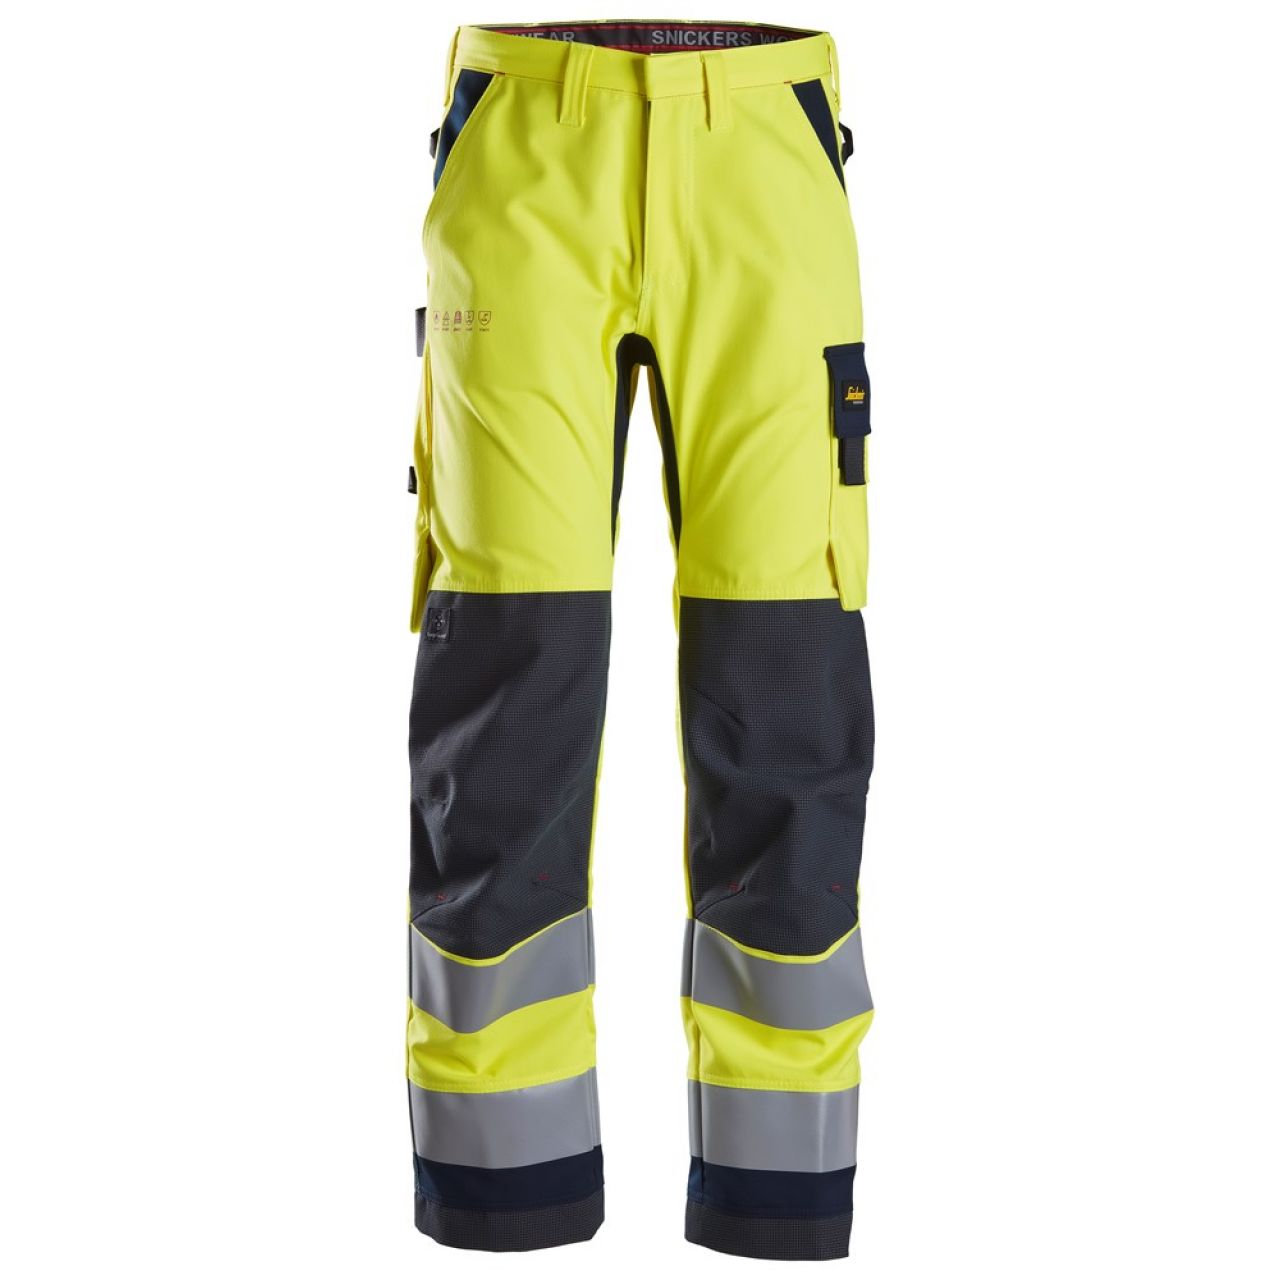 6360 Pantalones largos de trabajo de alta visibilidad clase 2 ProtecWork amarillo-azul marino talla 52